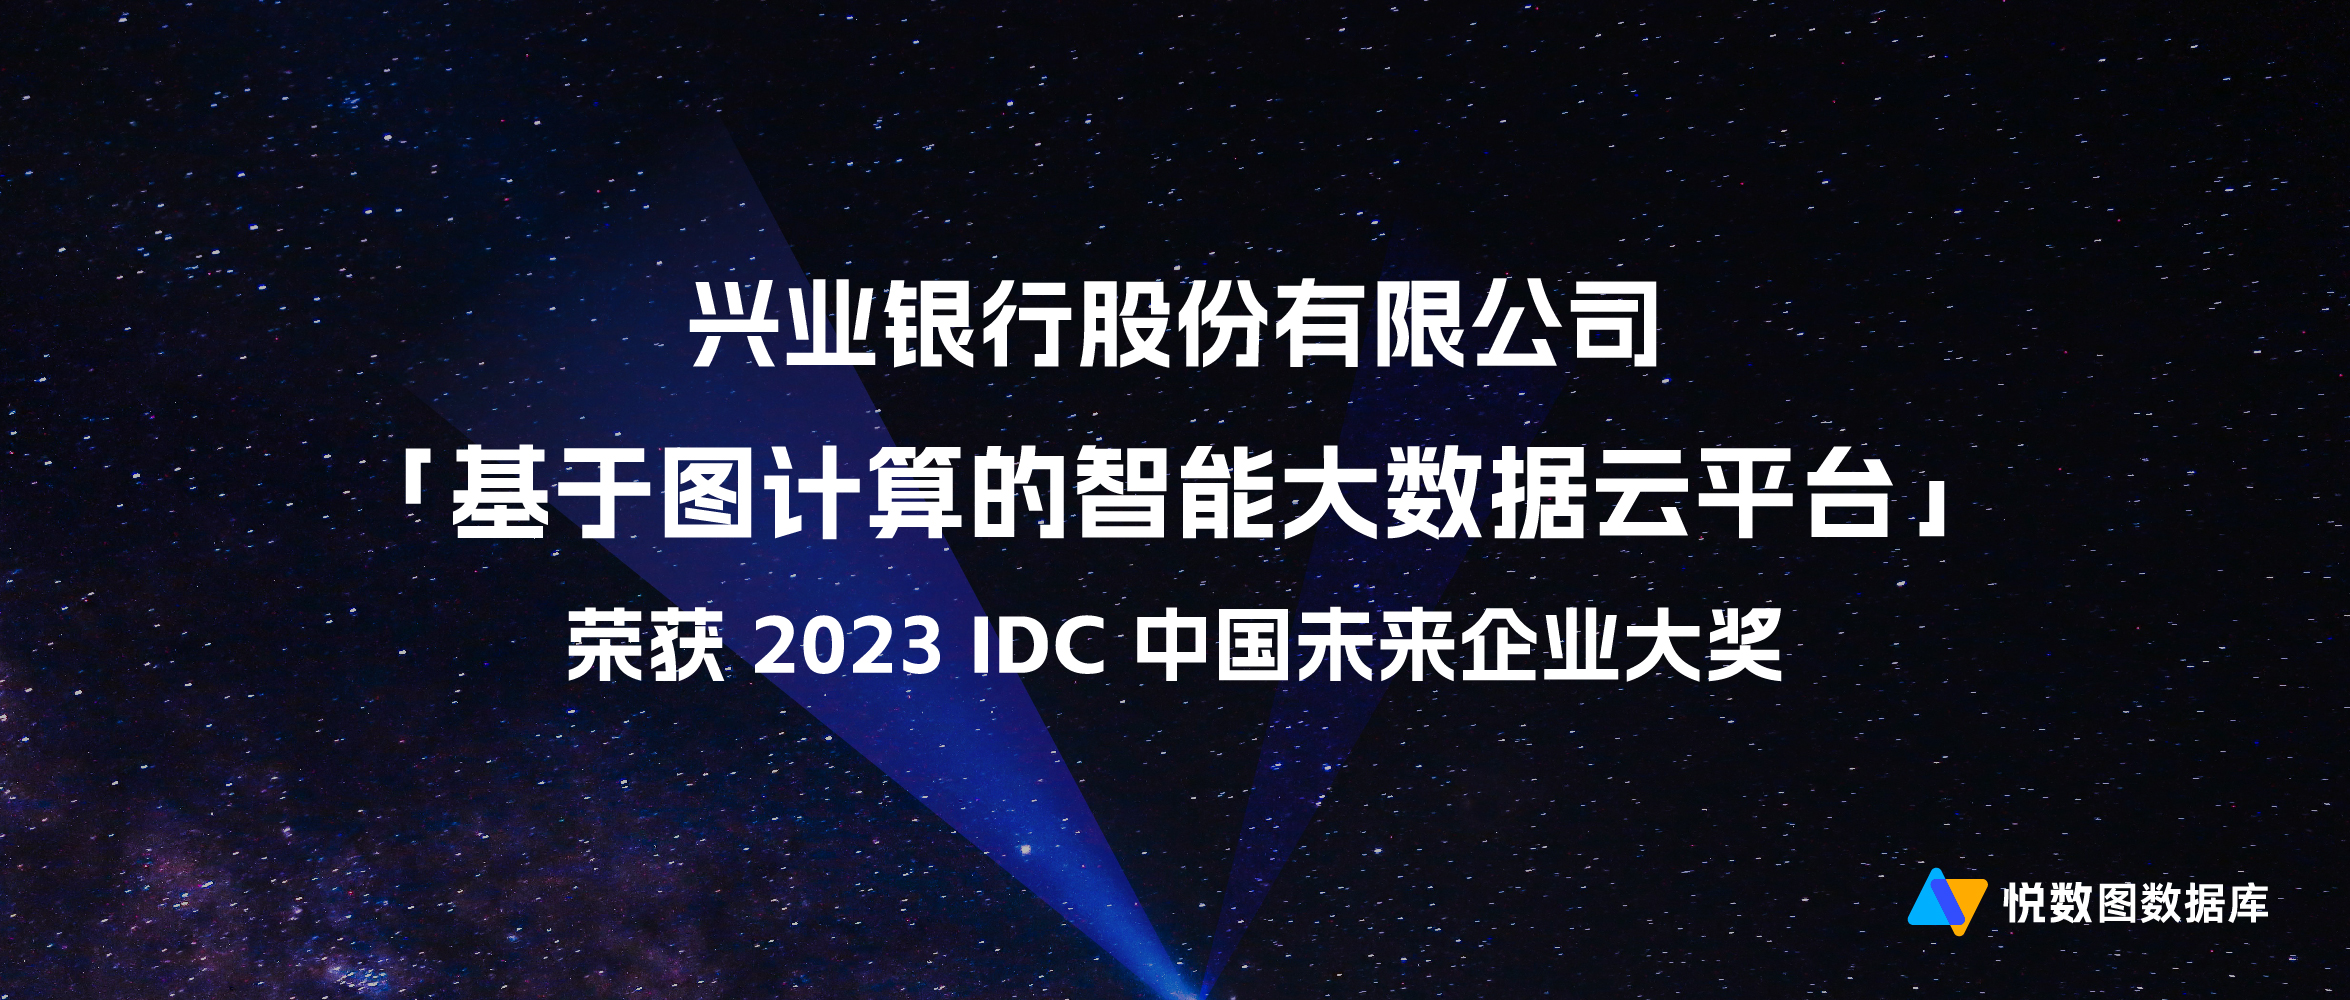 基于悦数图数据库的智能大数据云平台获 “2023 IDC中国 未来企业大奖”